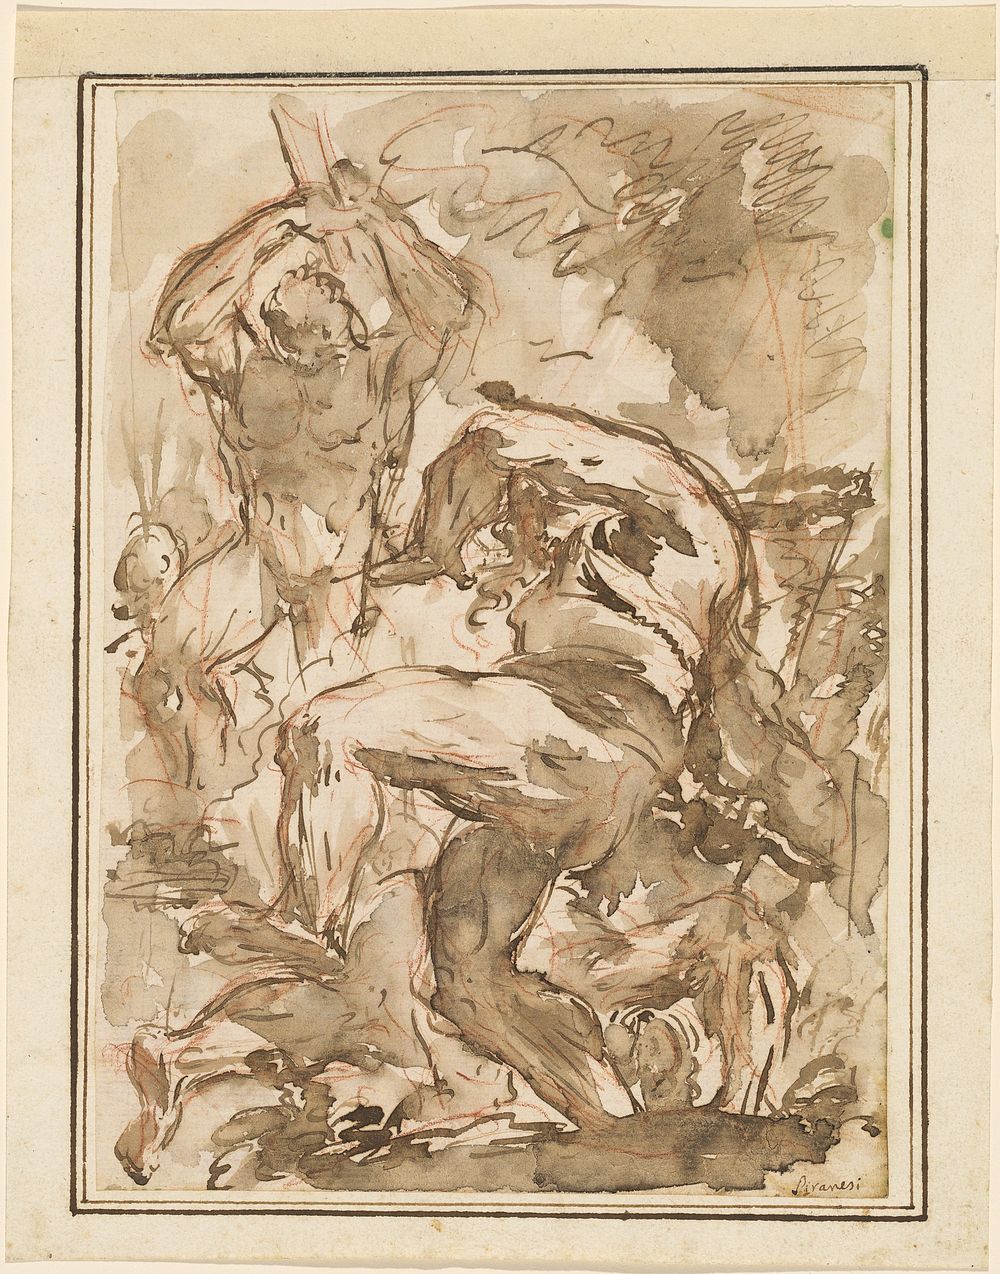 A Battle of Nude Men (ca. 1744-1745) by Giovanni Battista Piranesi. 